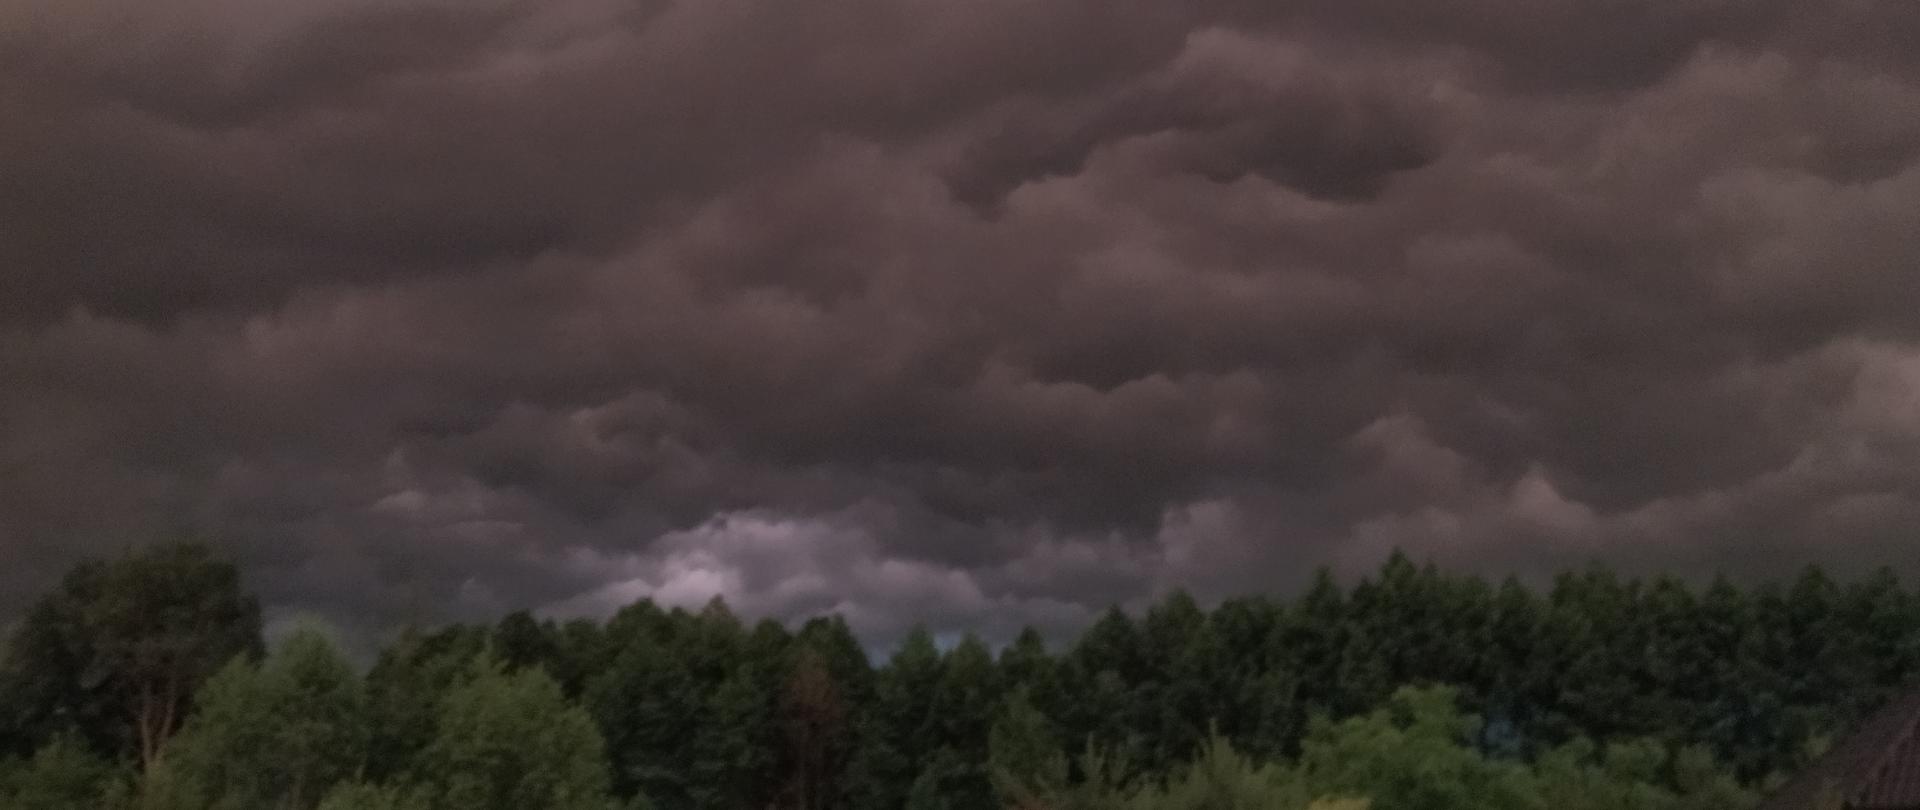 Widok kłębiących się ciemnych chmur burzowych